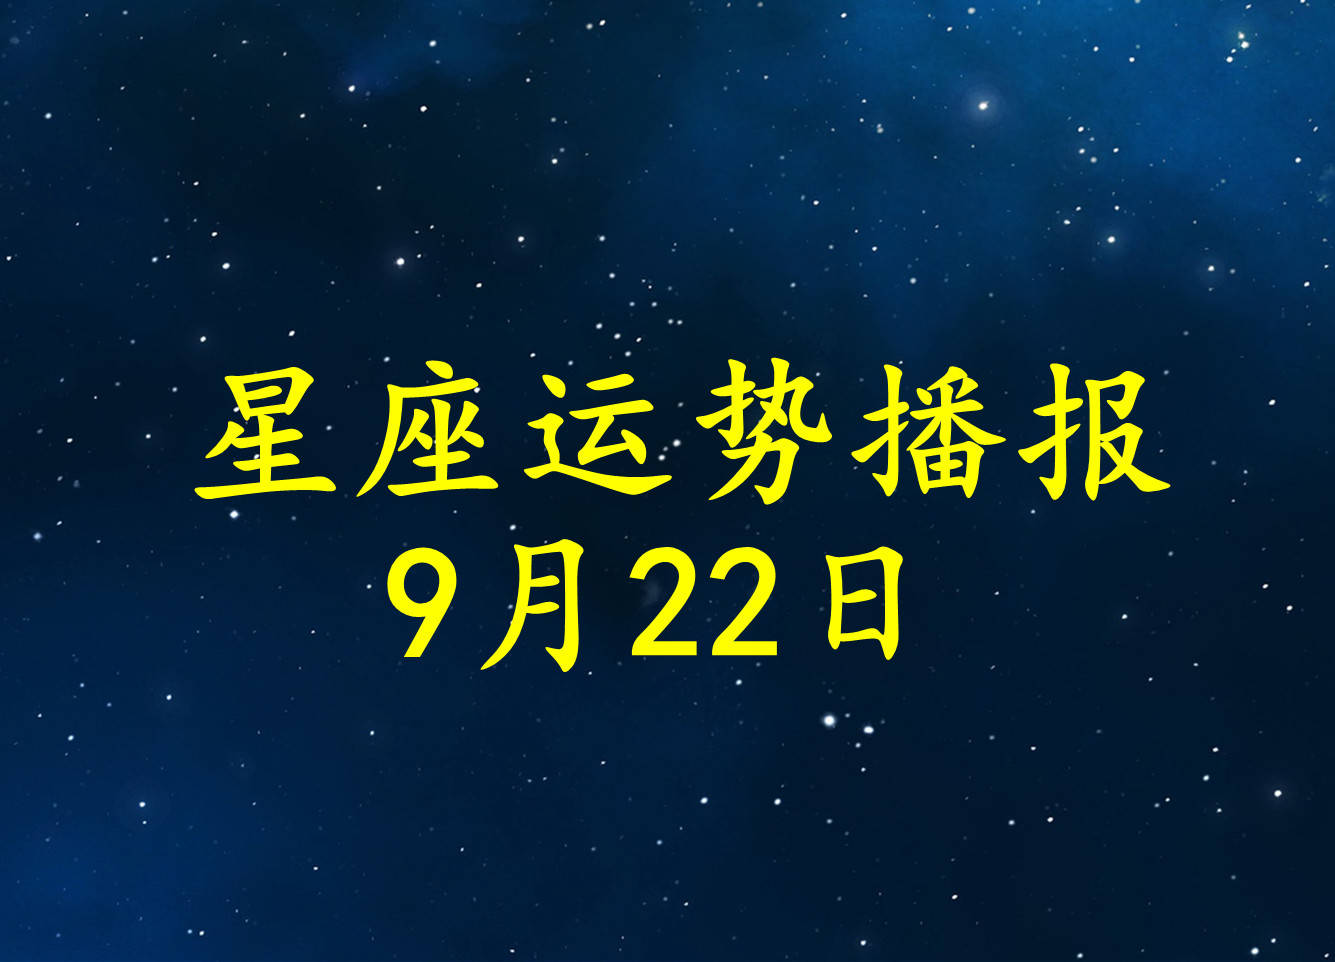 星座|【日运】12星座2021年9月22日运势播报